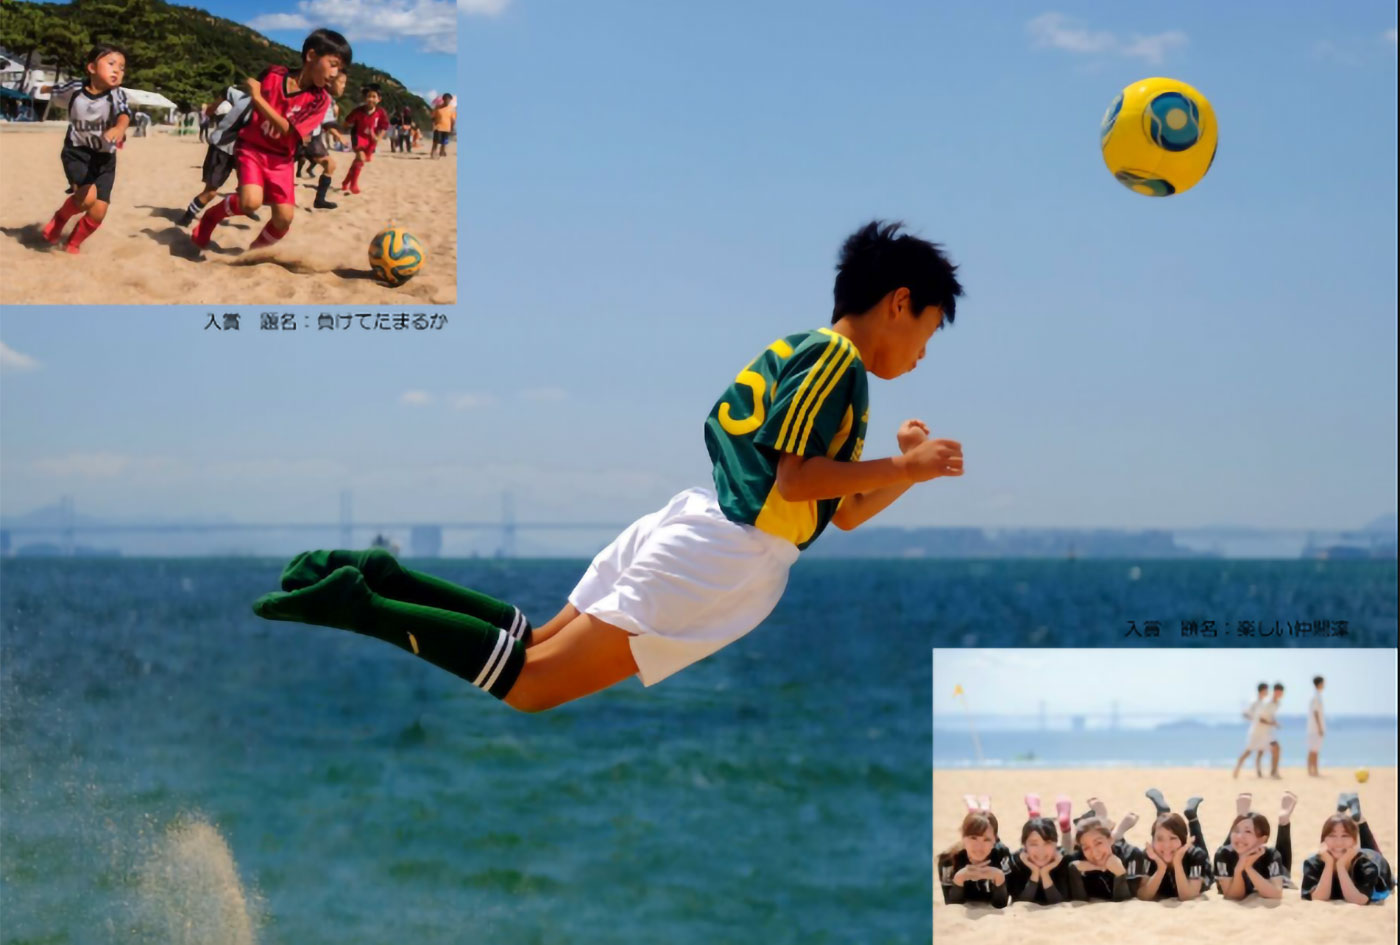 たまの渋川ビーチサッカー 岡山県 イベント情報が満載のポータルサイト Event Greenfield